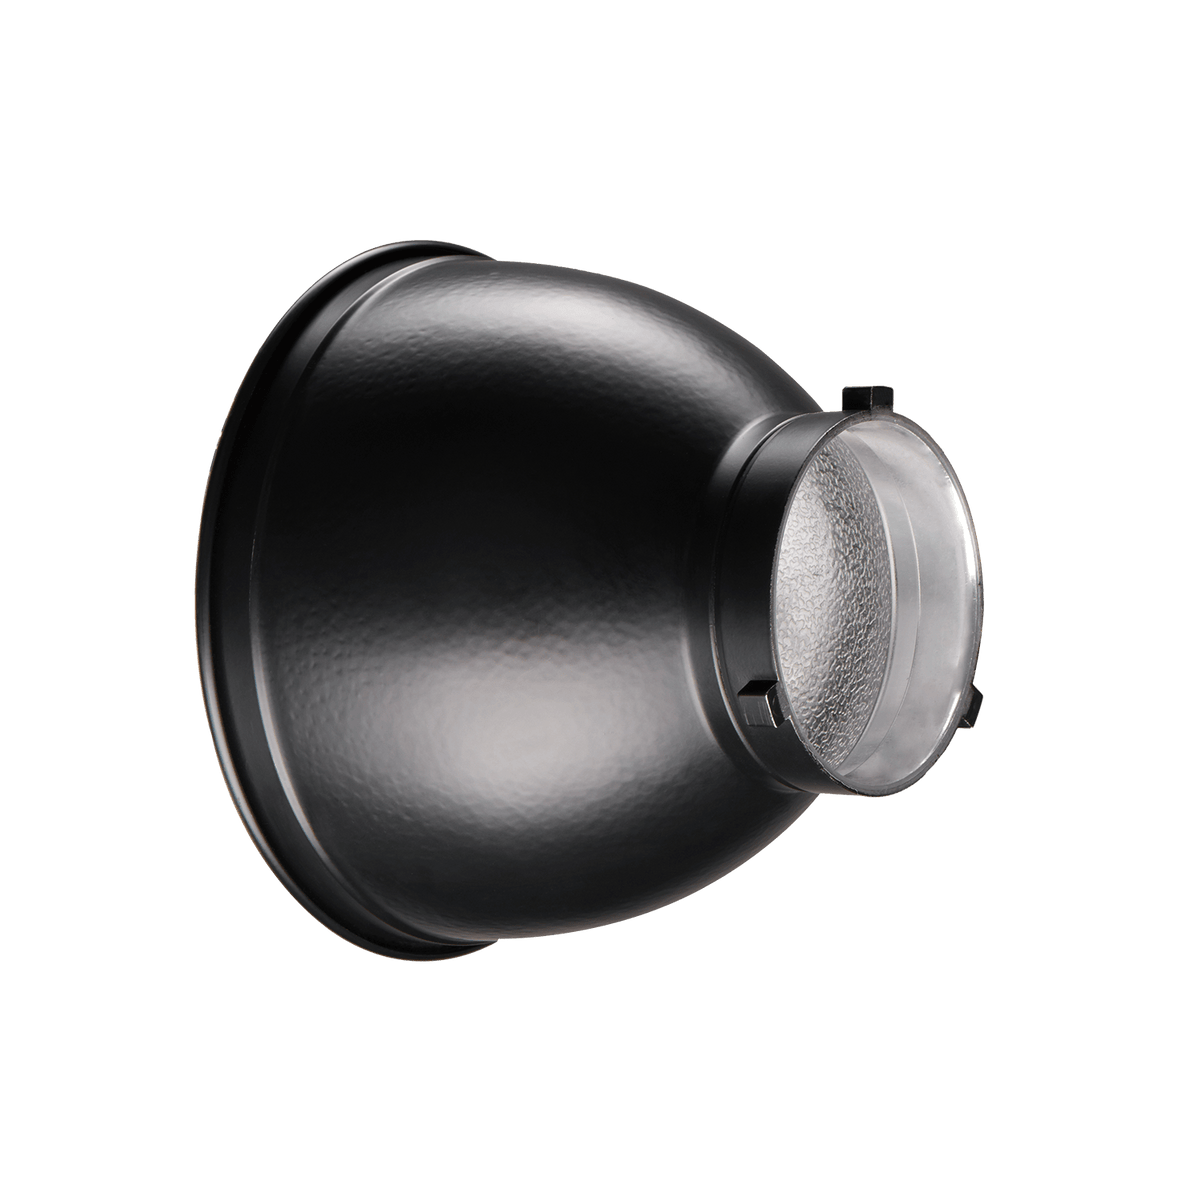 Heitech 4er-Set Sicherheits-Reflektor-Armband mit LED und 3